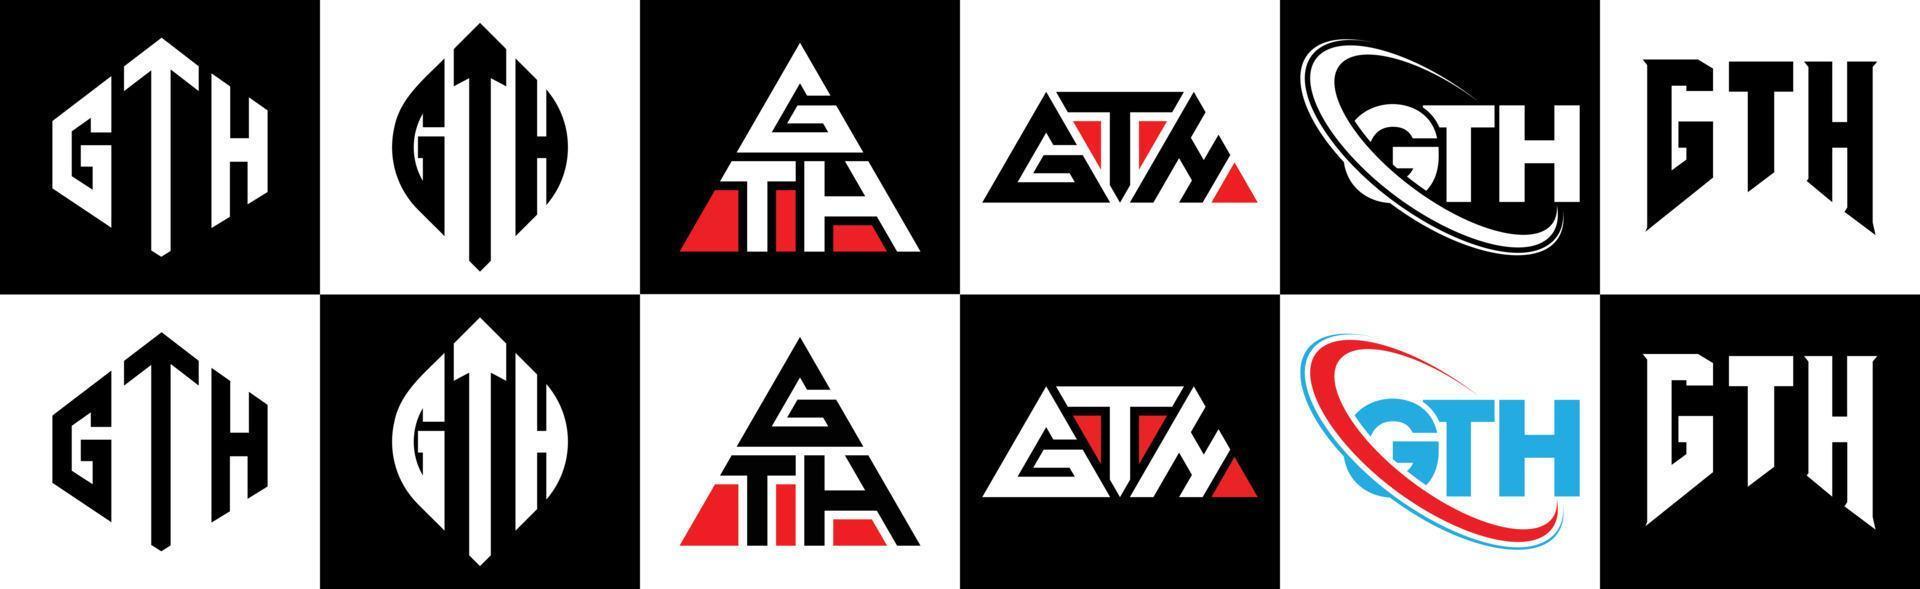 gth-Buchstaben-Logo-Design in sechs Stilen. Gth Polygon, Kreis, Dreieck, Sechseck, flacher und einfacher Stil mit schwarz-weißem Buchstabenlogo in einer Zeichenfläche. gth minimalistisches und klassisches Logo vektor